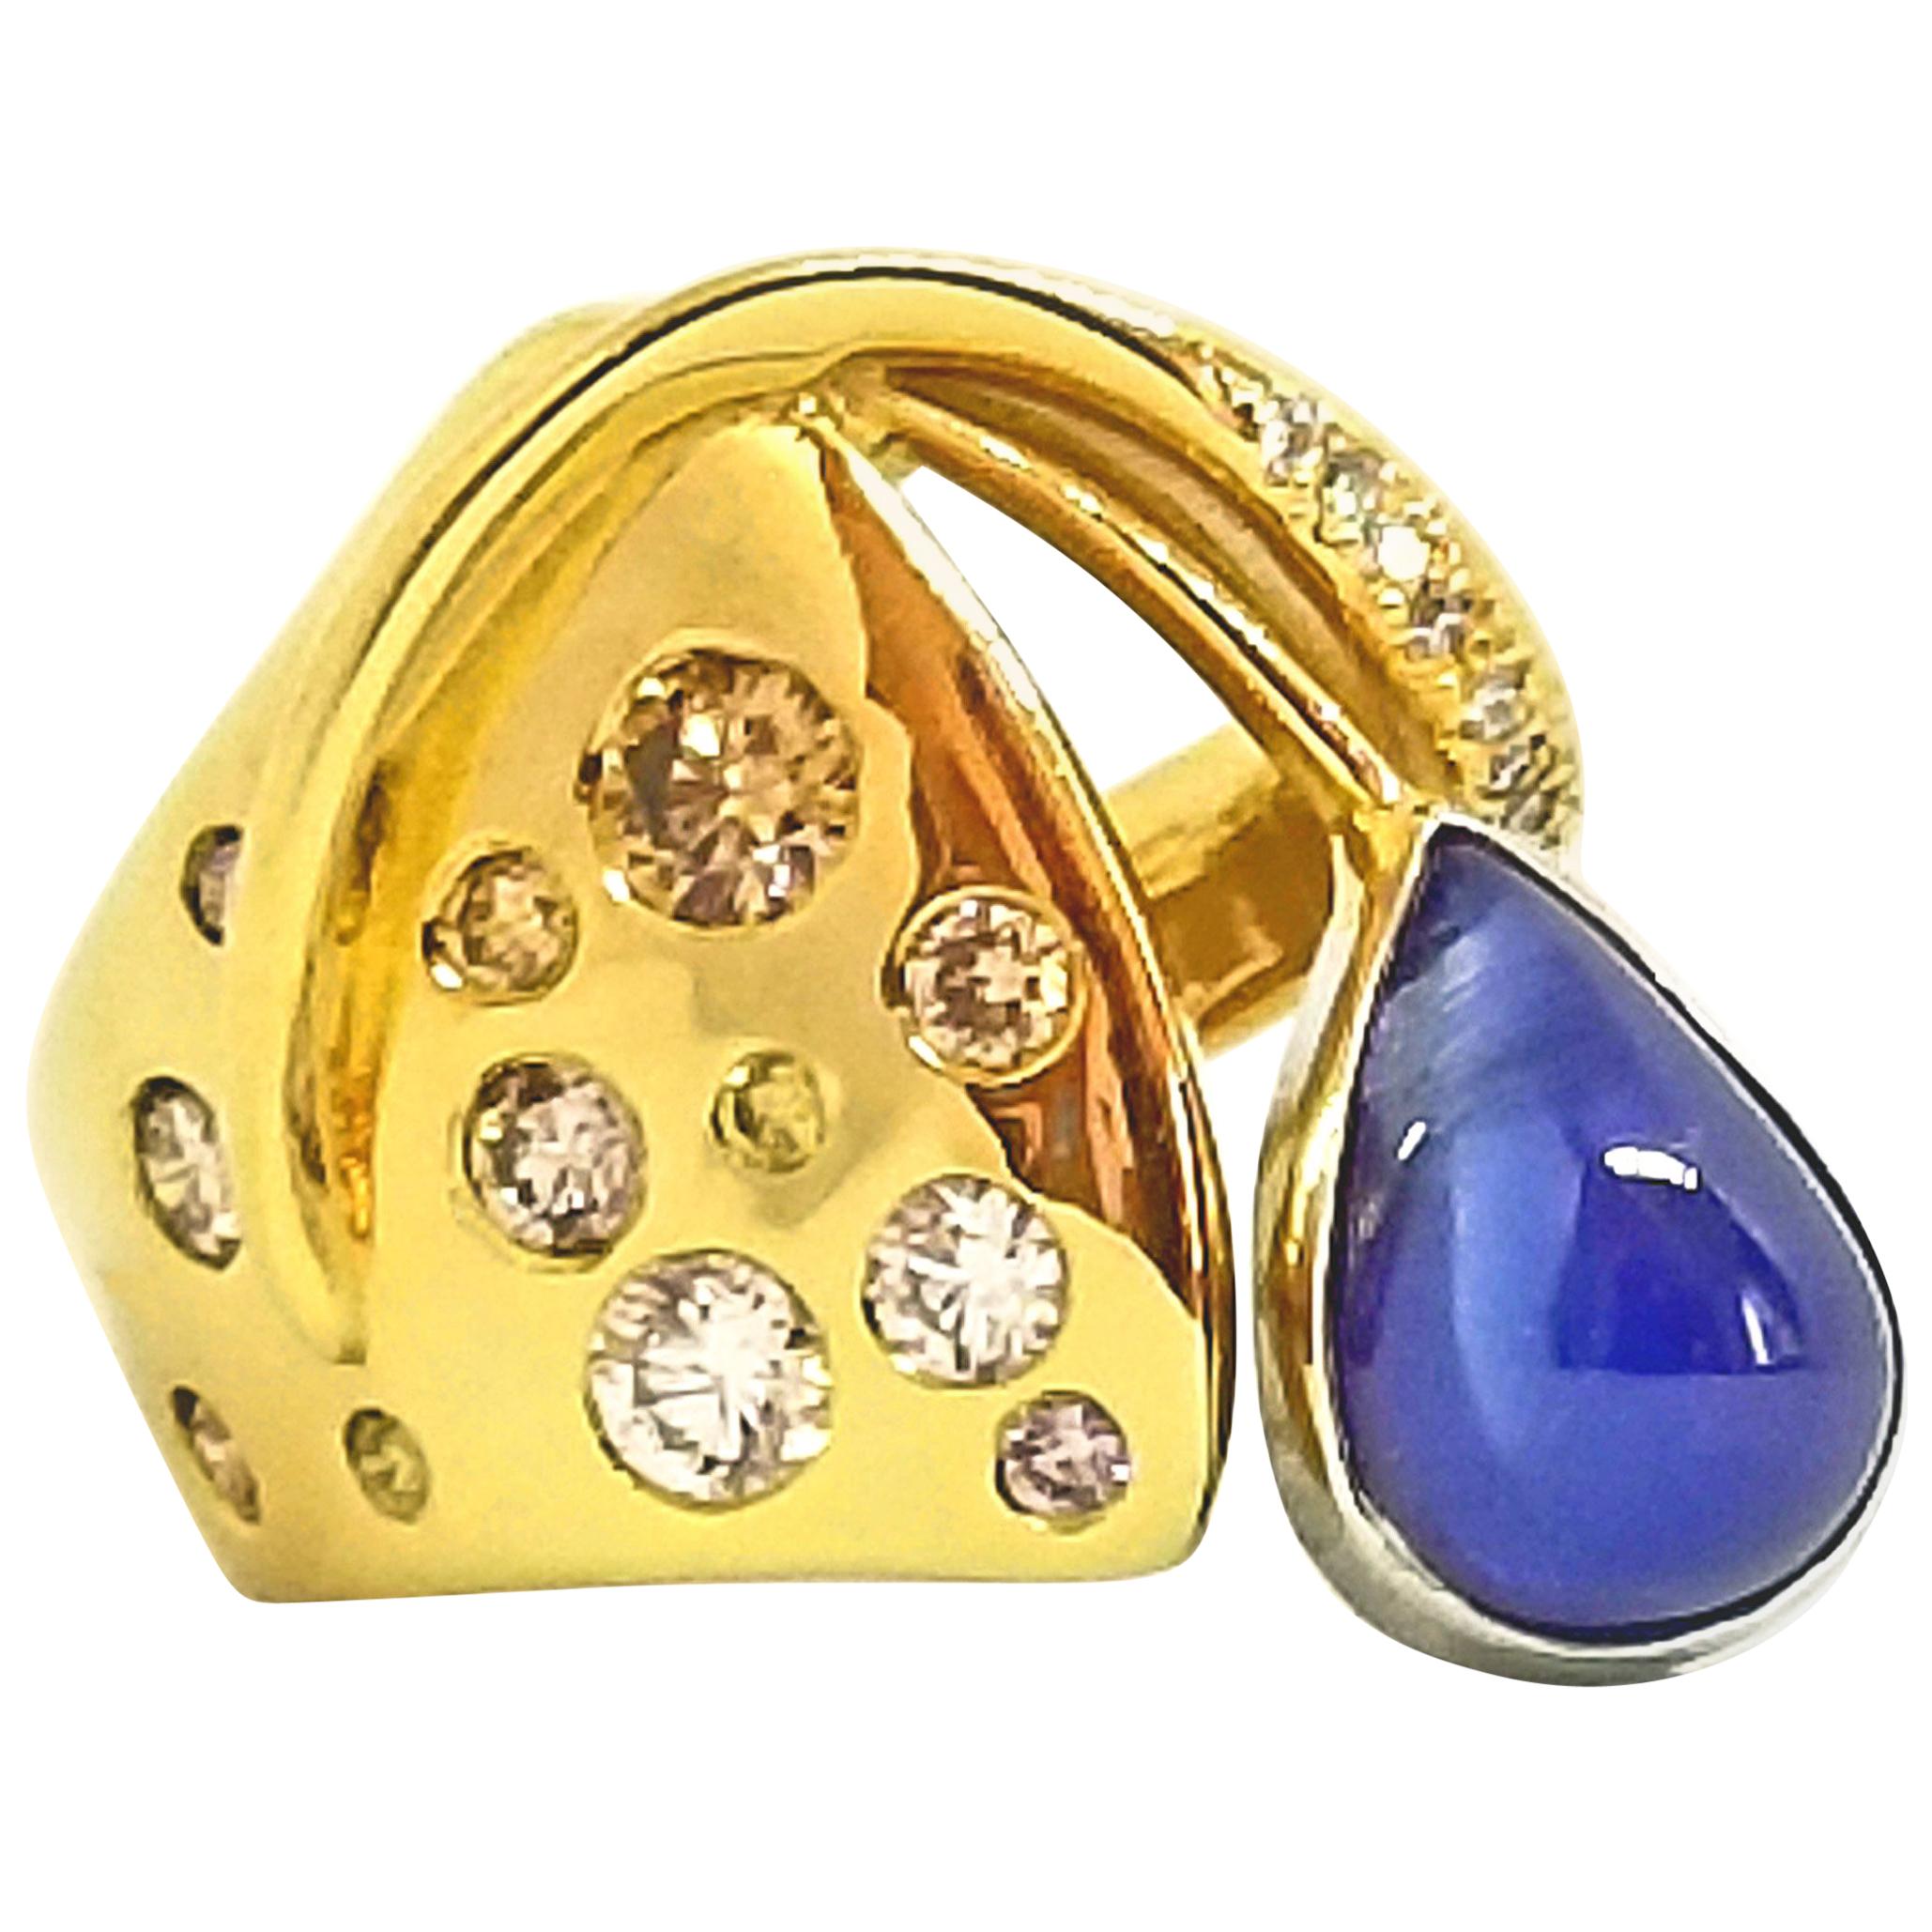 Dieser einzigartige, von einem Künstler entworfene und gefertigte Statement-Ring enthält einen Sugarloaf-Saphir von 5,51 Karat. Der tränenförmige Stein ist ein durchscheinendes mittleres Blau und ist in 18K Weißgold eingefasst. Der zeitgenössische